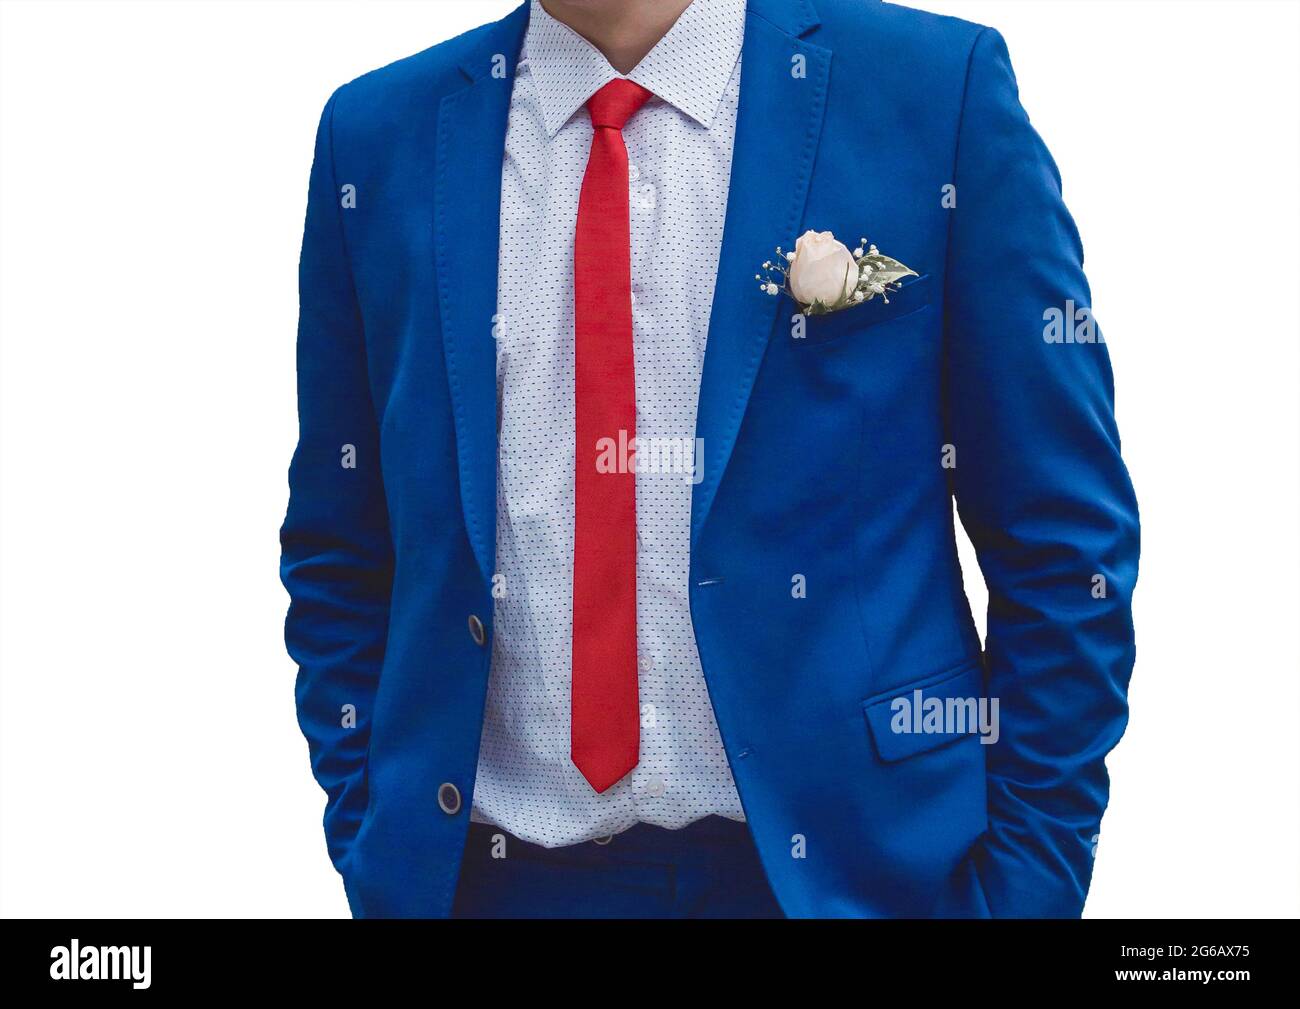 Geschäftsmann in weißem Hemd, blauem Anzug und roter Krawatte auf weißem  Hintergrund isoliert Stockfotografie - Alamy